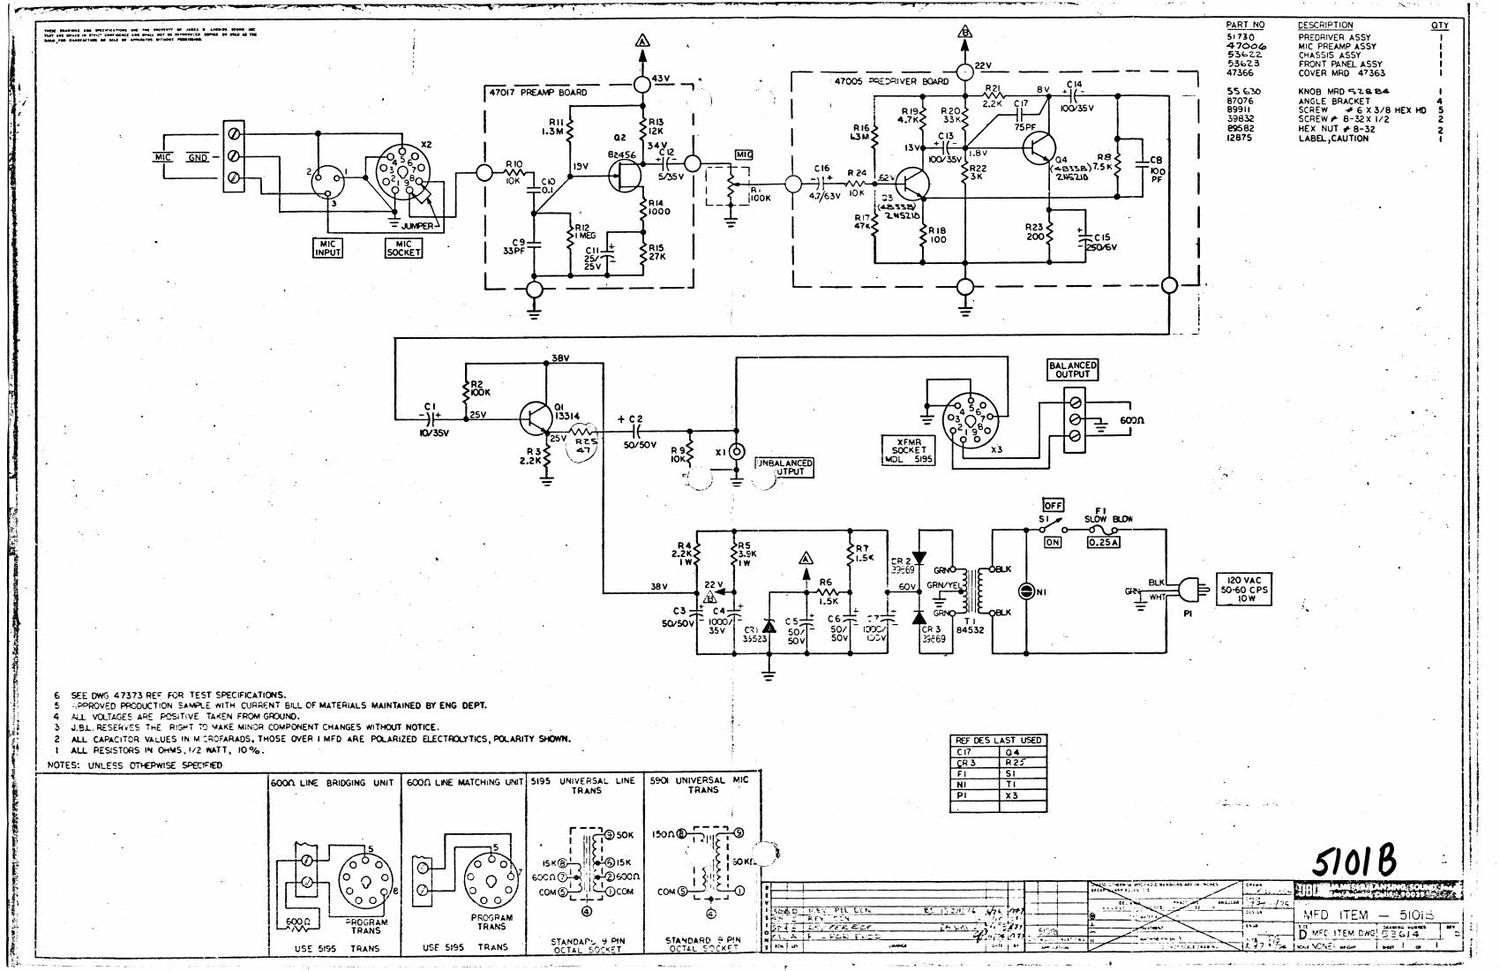 jbl 5101 b schematic